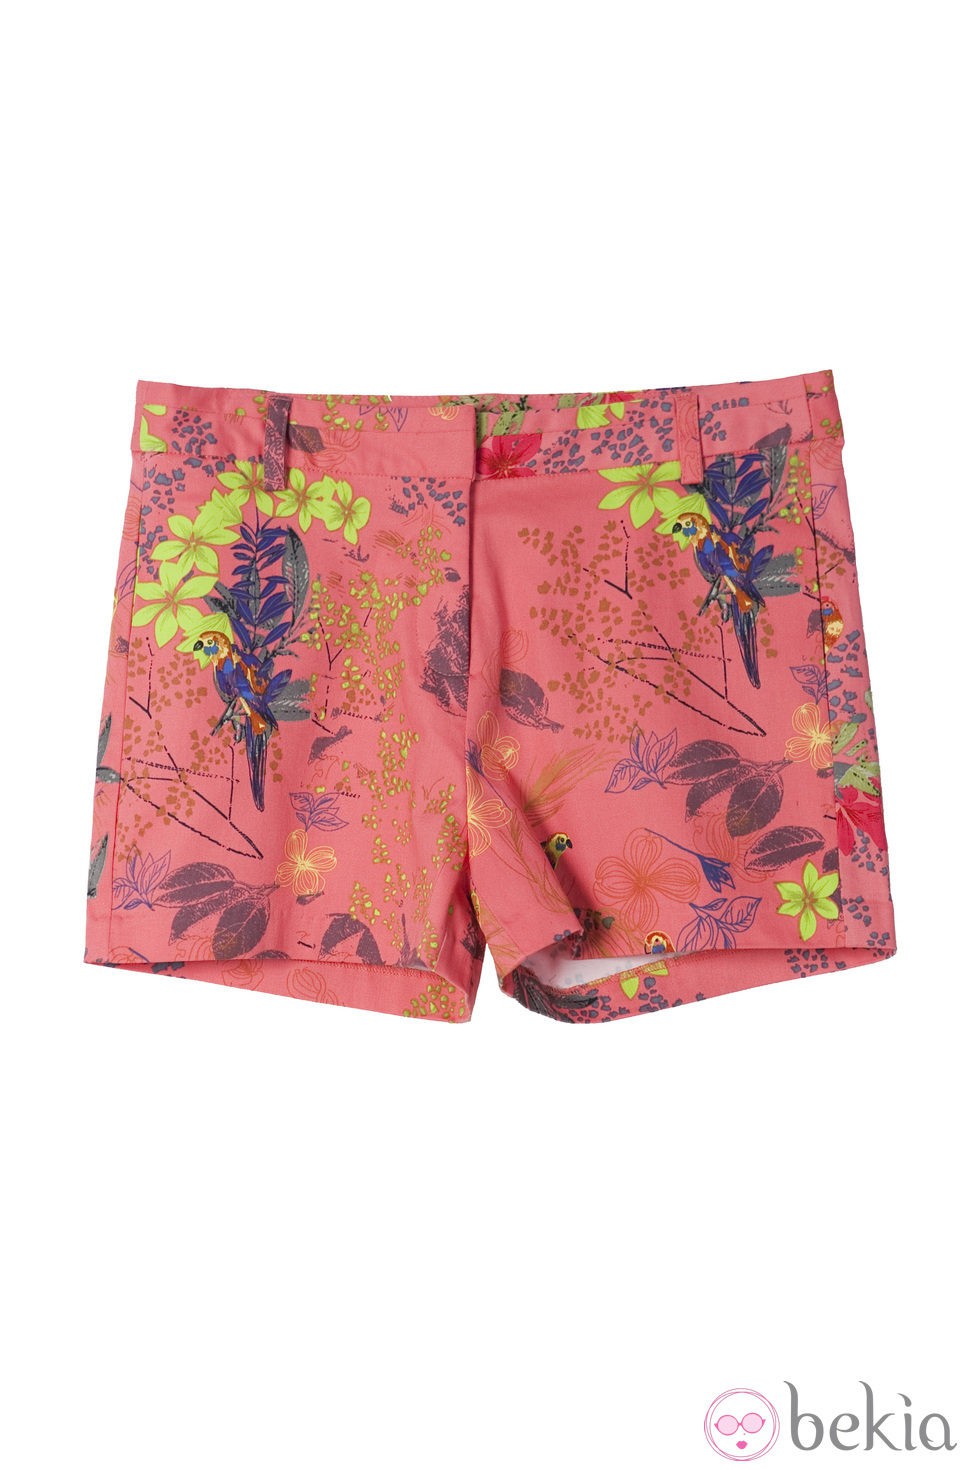 Shorts color coral de la colección primavera/verano 2014 de Lavand